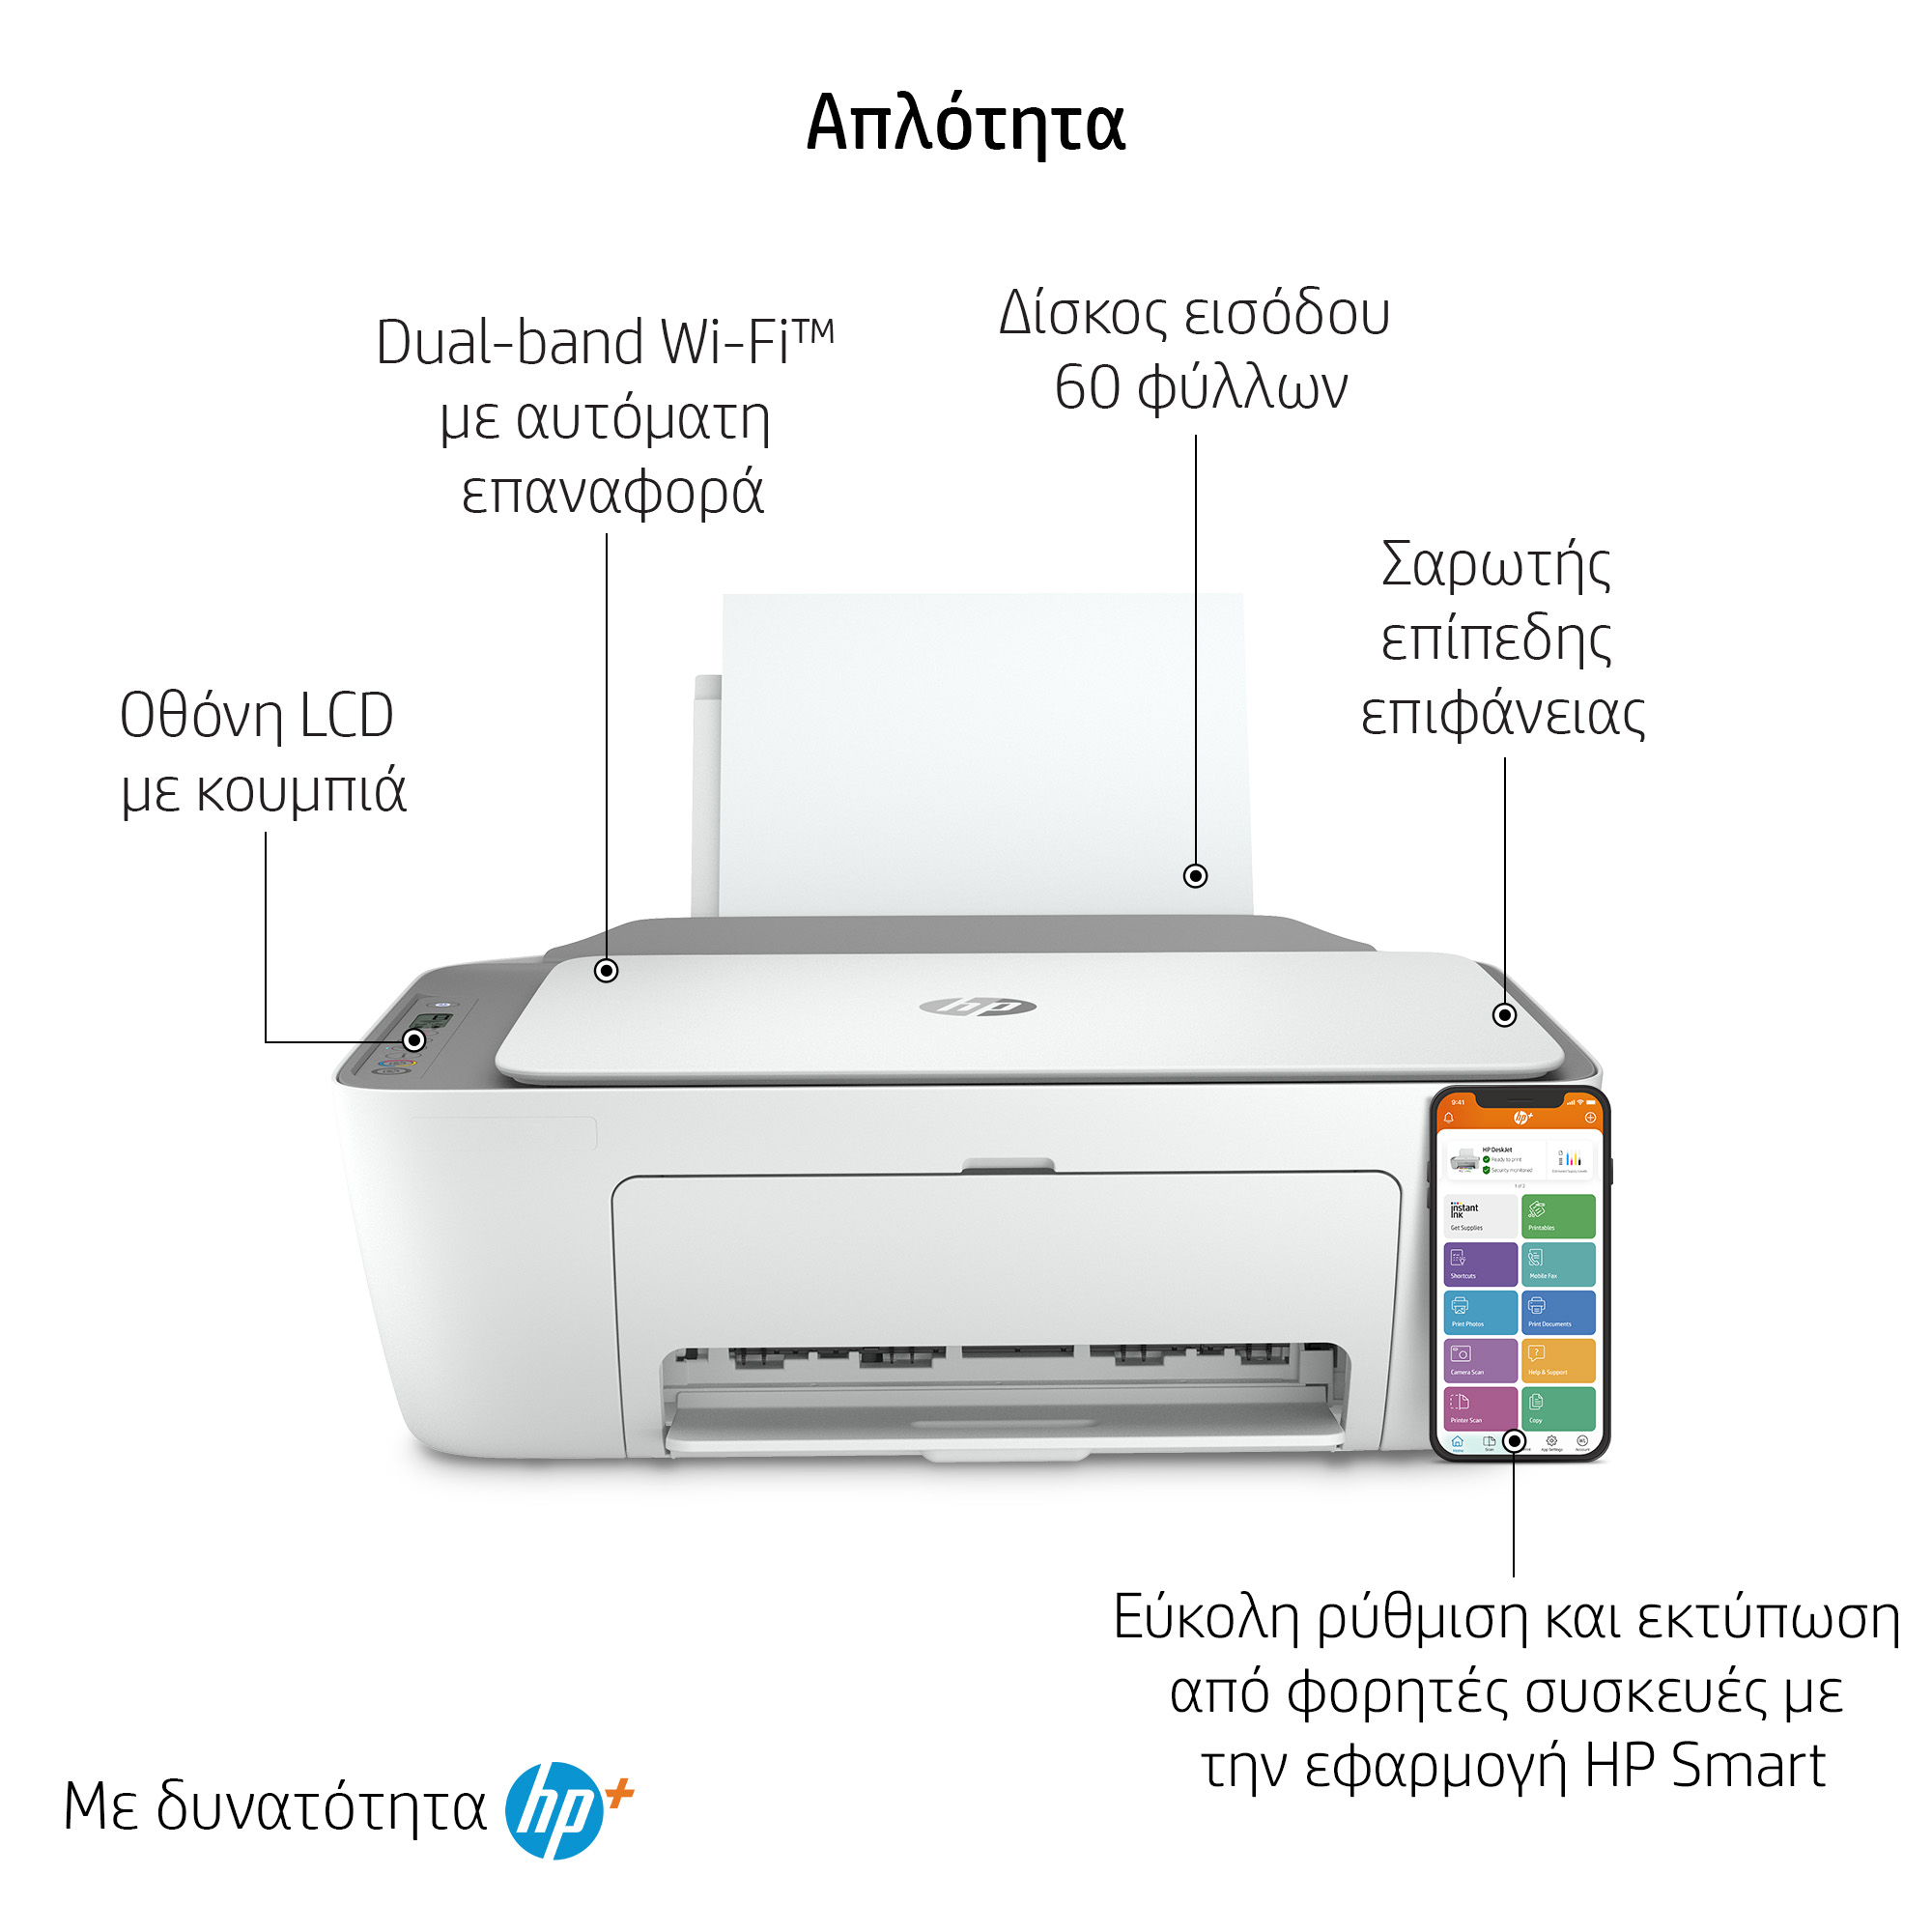 HP DeskJet 2720e All-in-One Printer